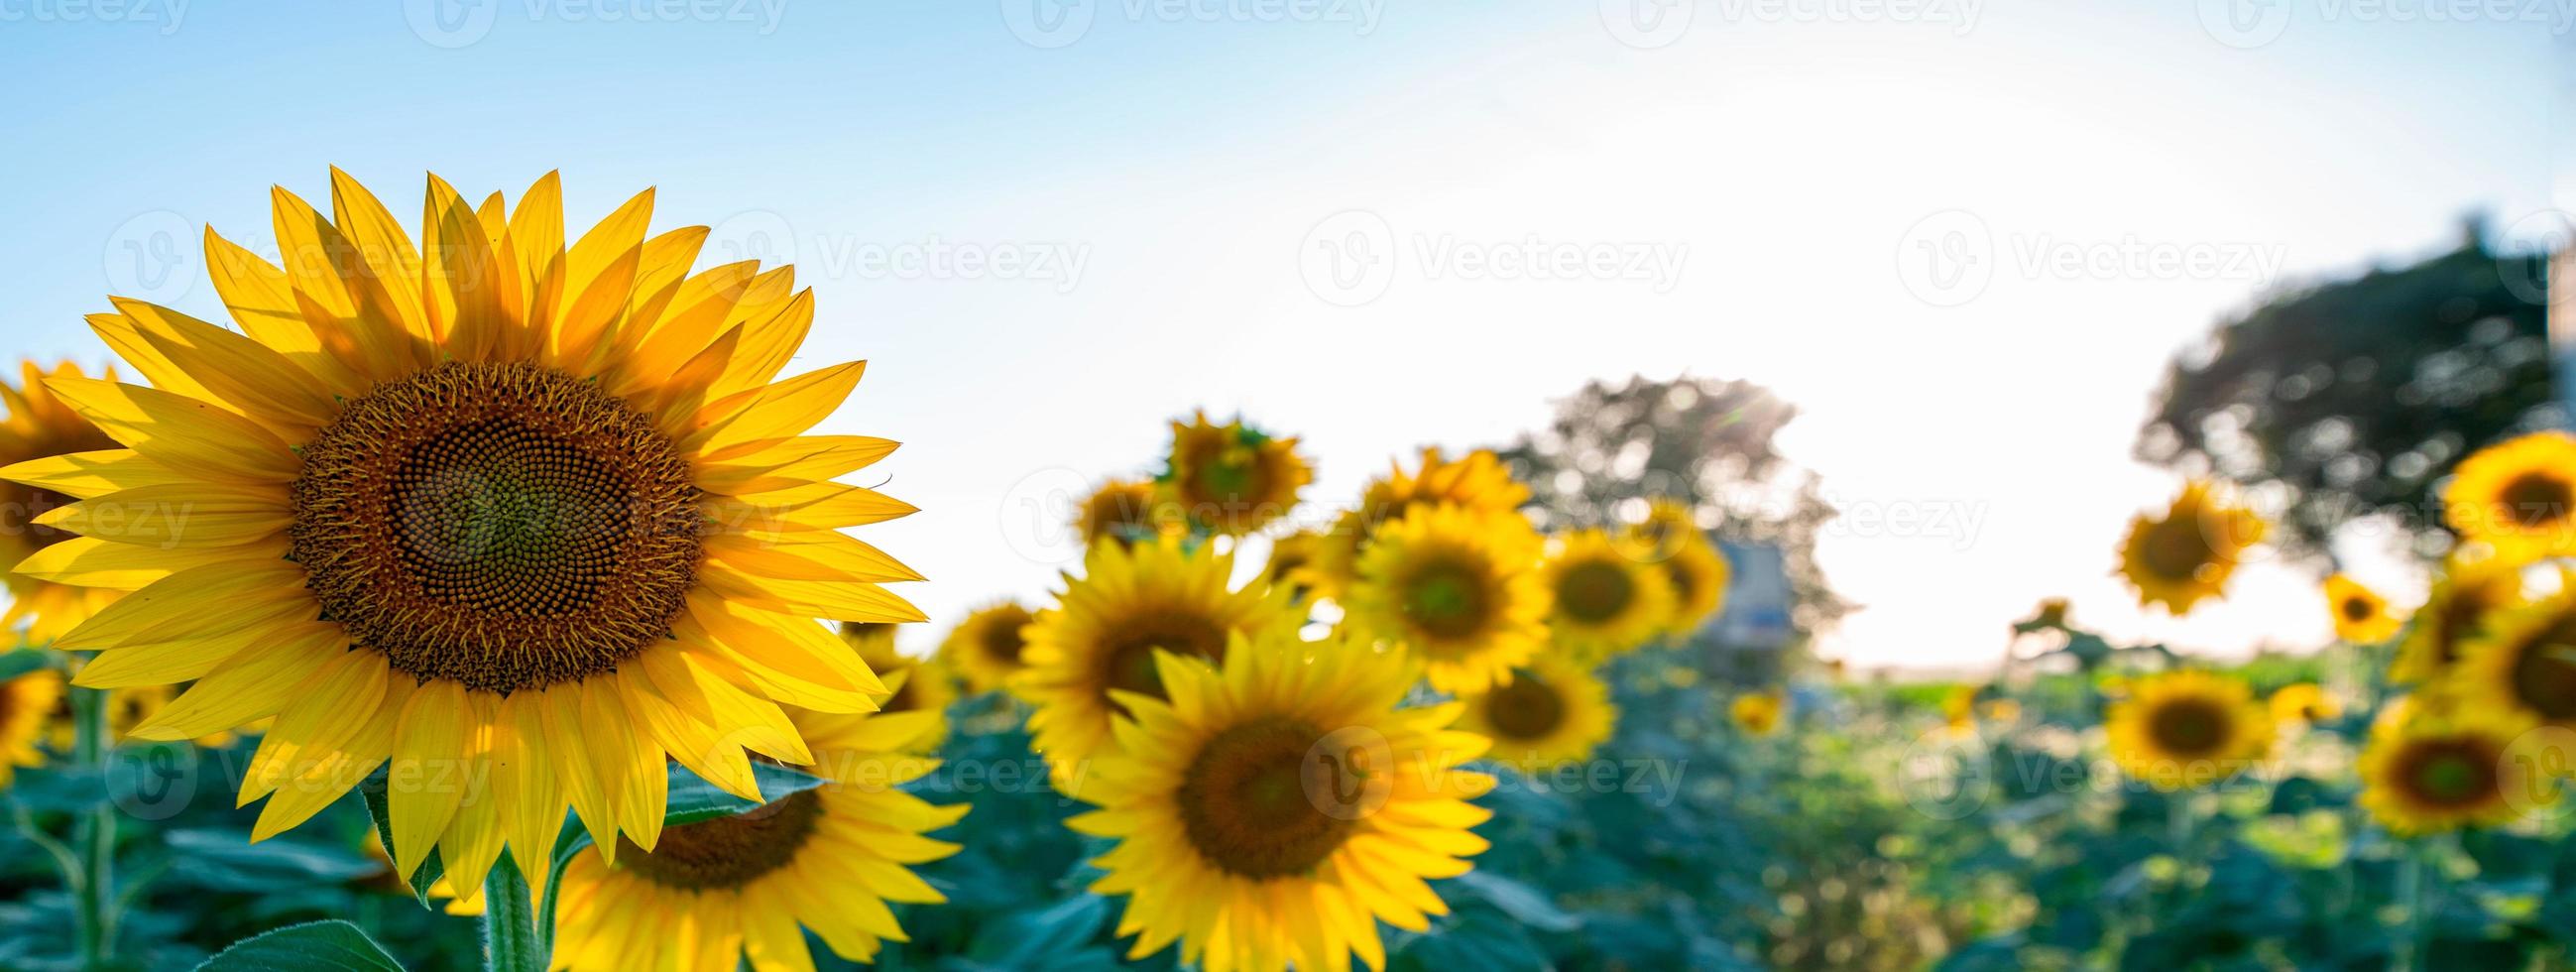 Sonnenblumenbanner gegen offene Sonne foto